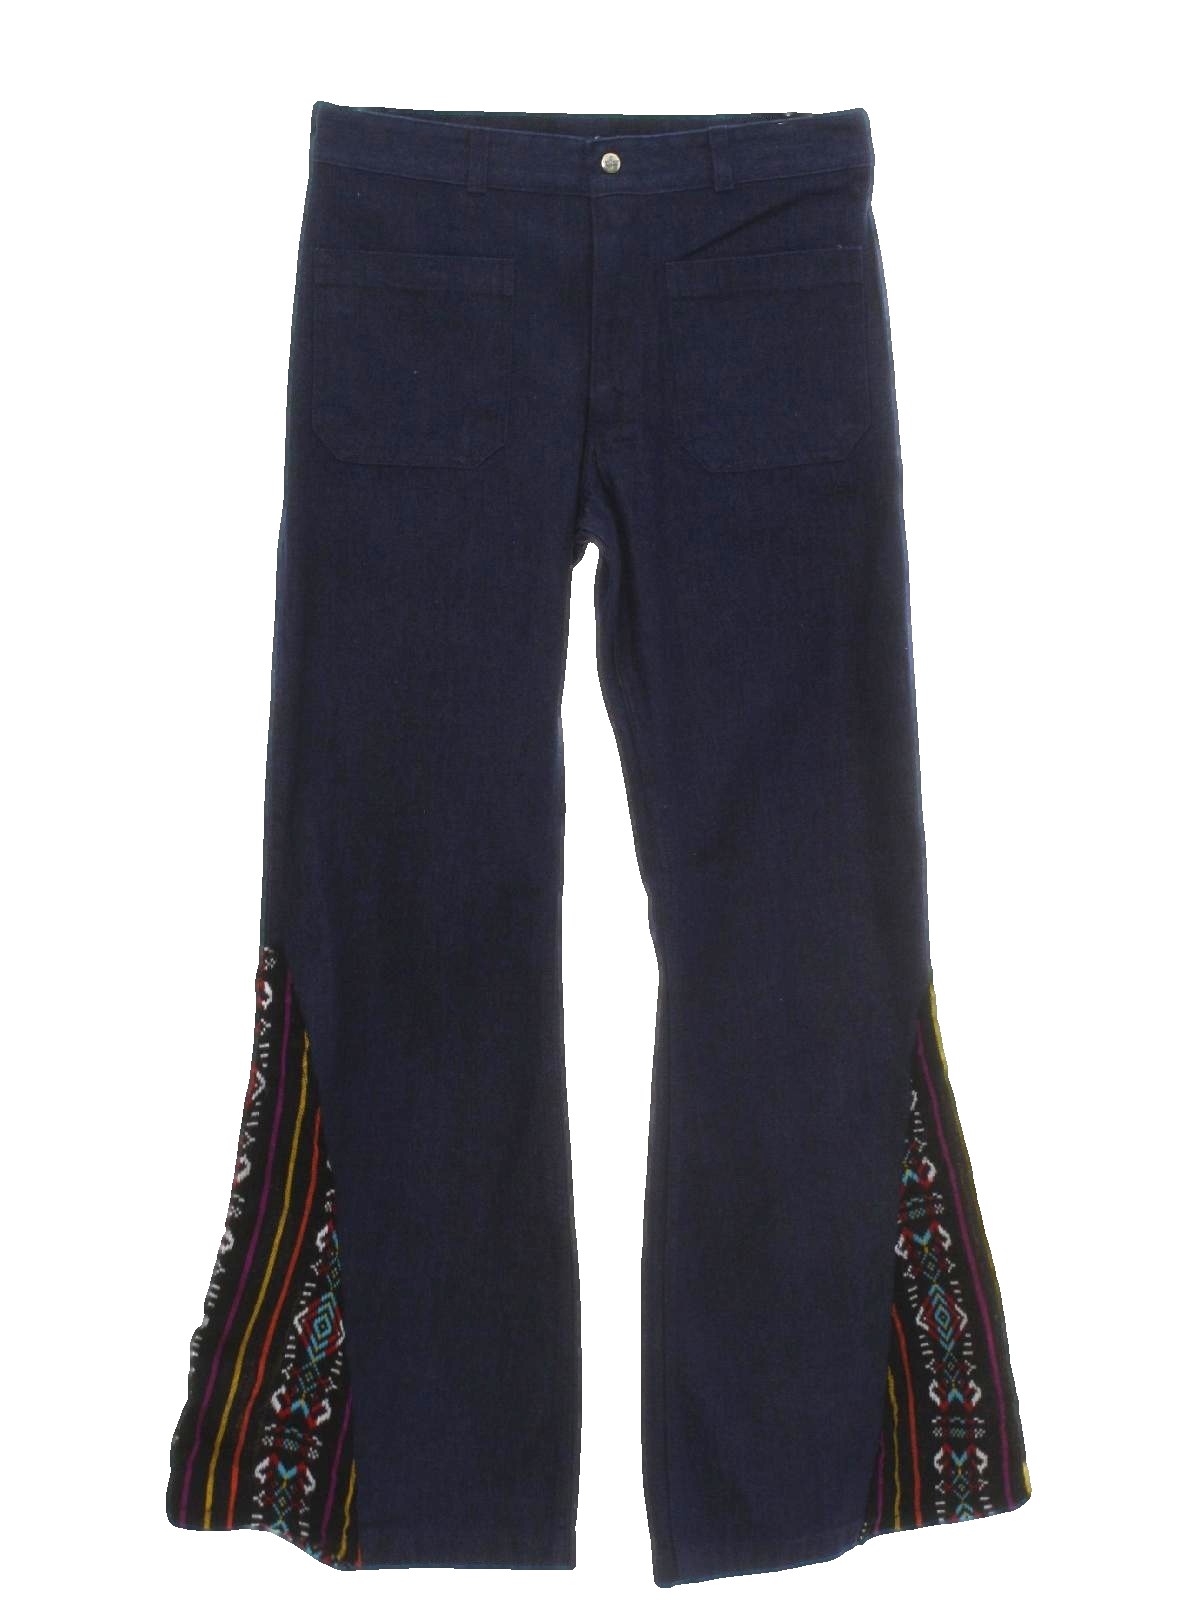 Vintage 70s Bellbottom Pants: 70s style -Seafarer- Mens dark blue ...